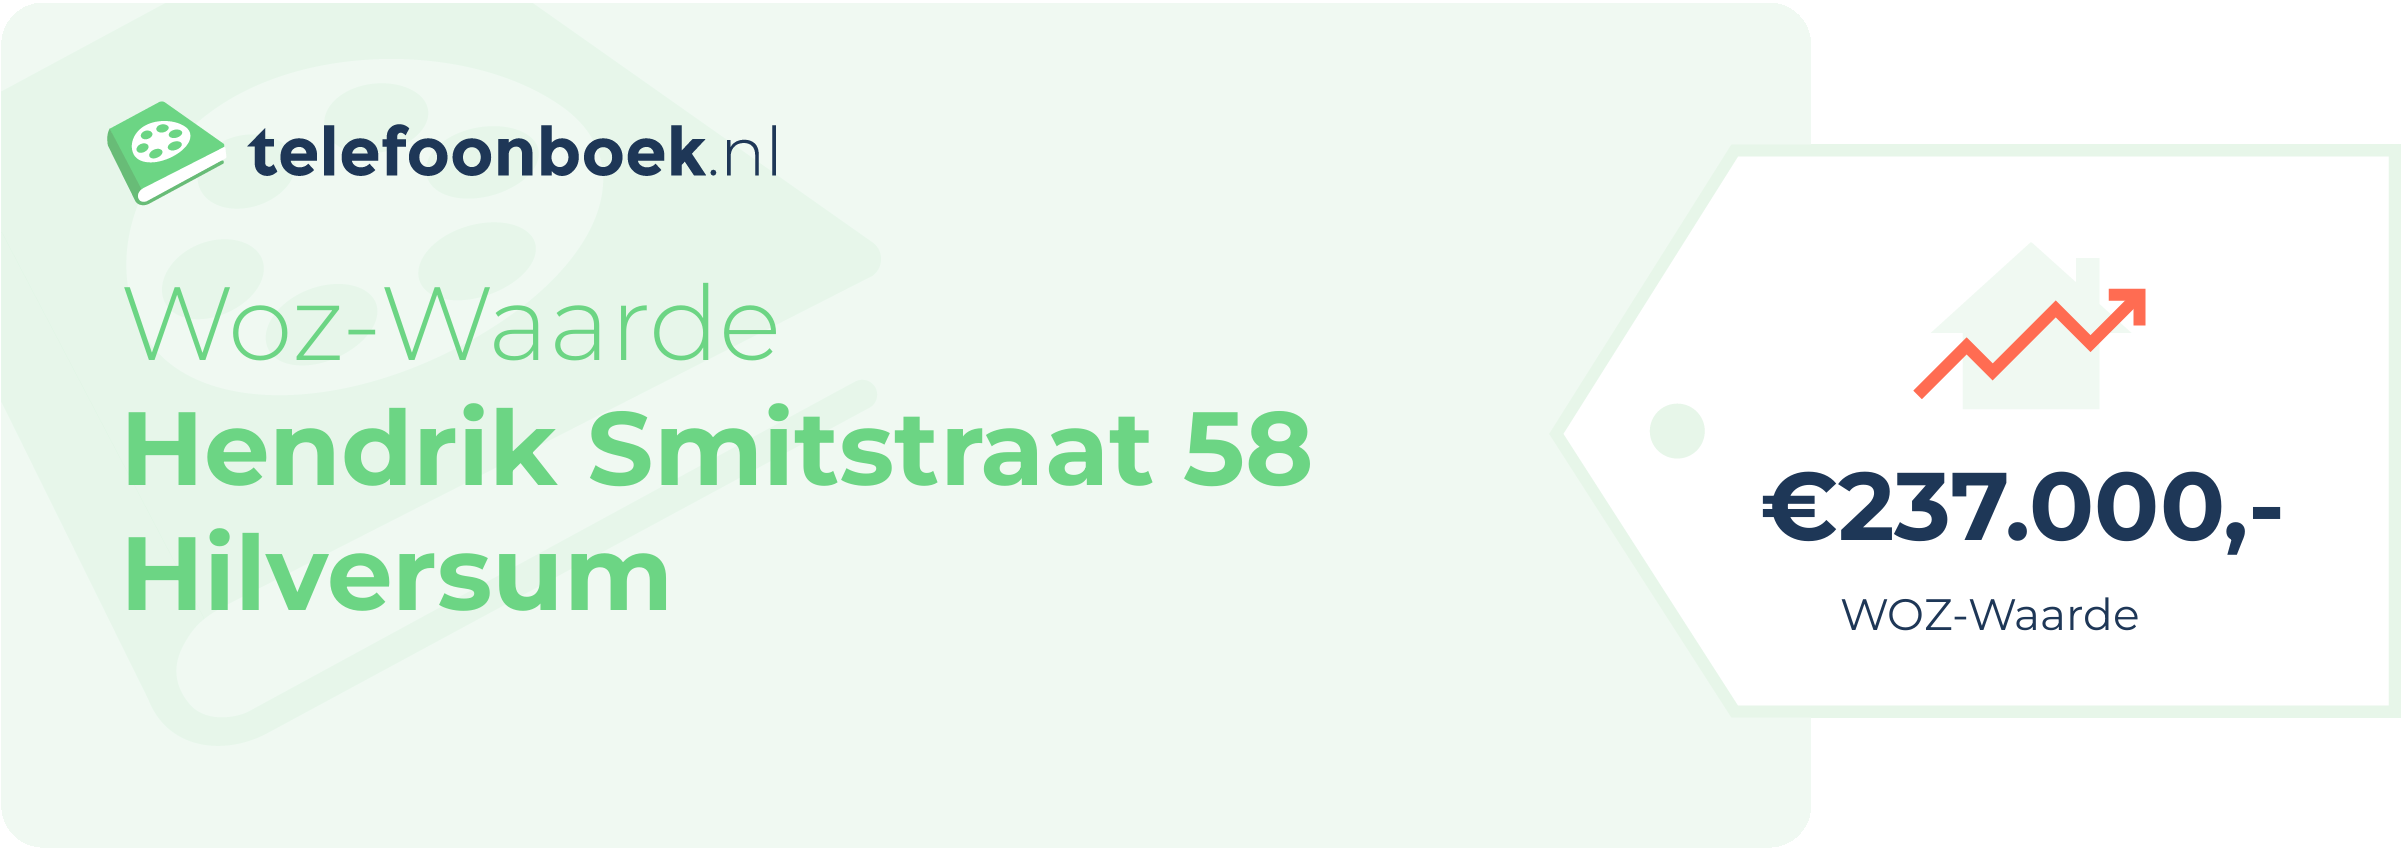 WOZ-waarde Hendrik Smitstraat 58 Hilversum